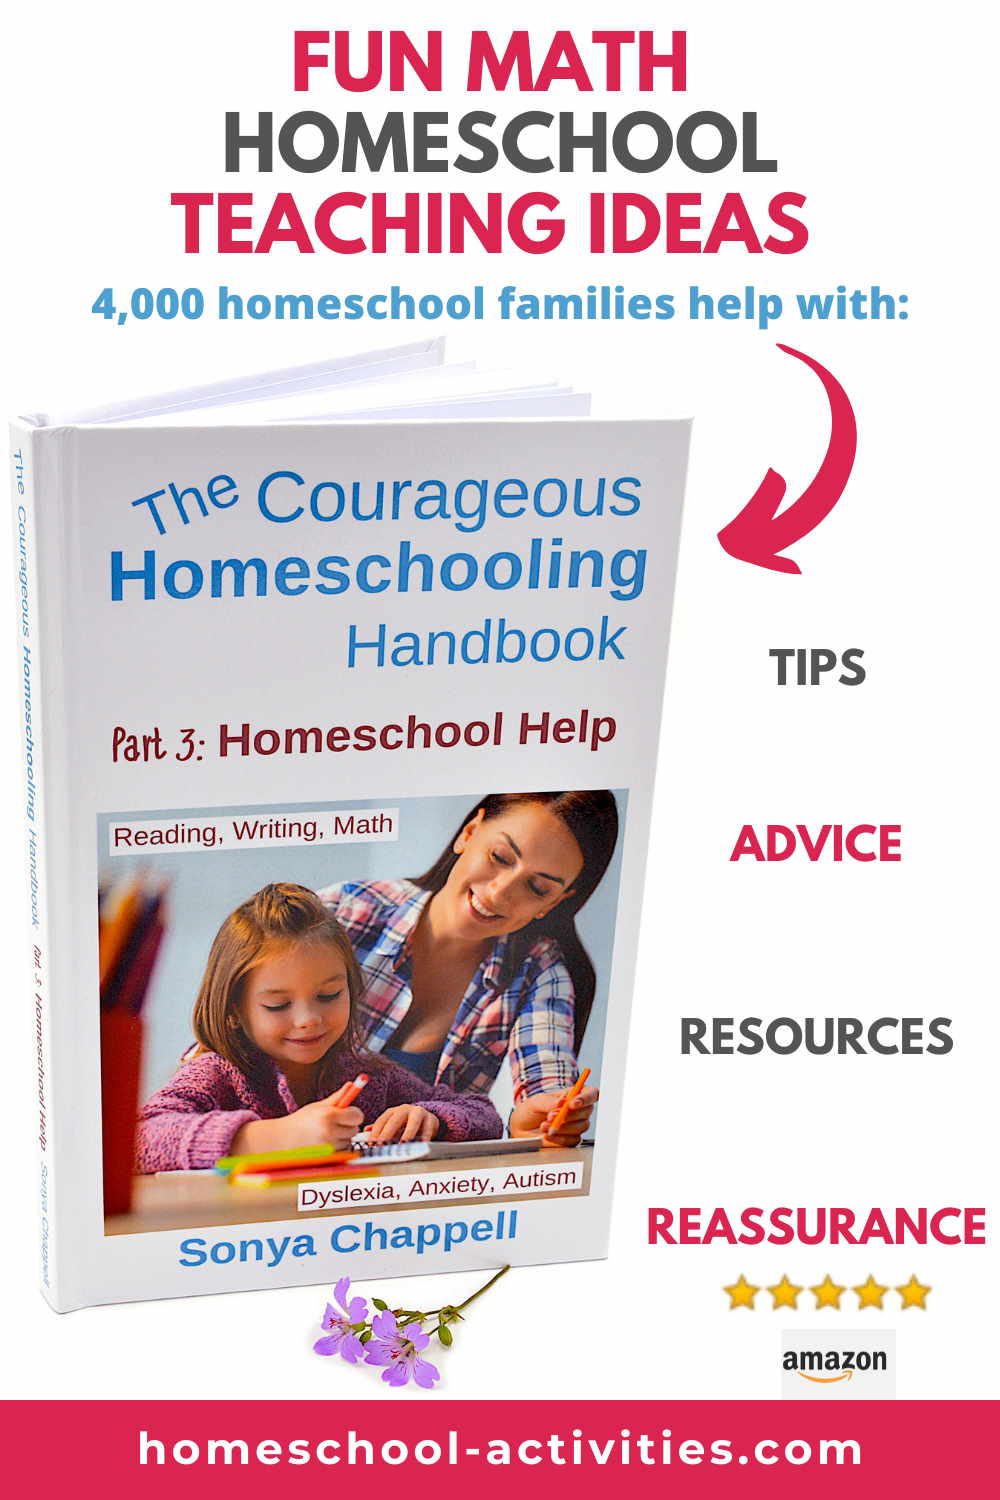 Fun homeschool math activities and ideas from 4,000 homeschoolers in The Courageous Homeschooling Handbook.